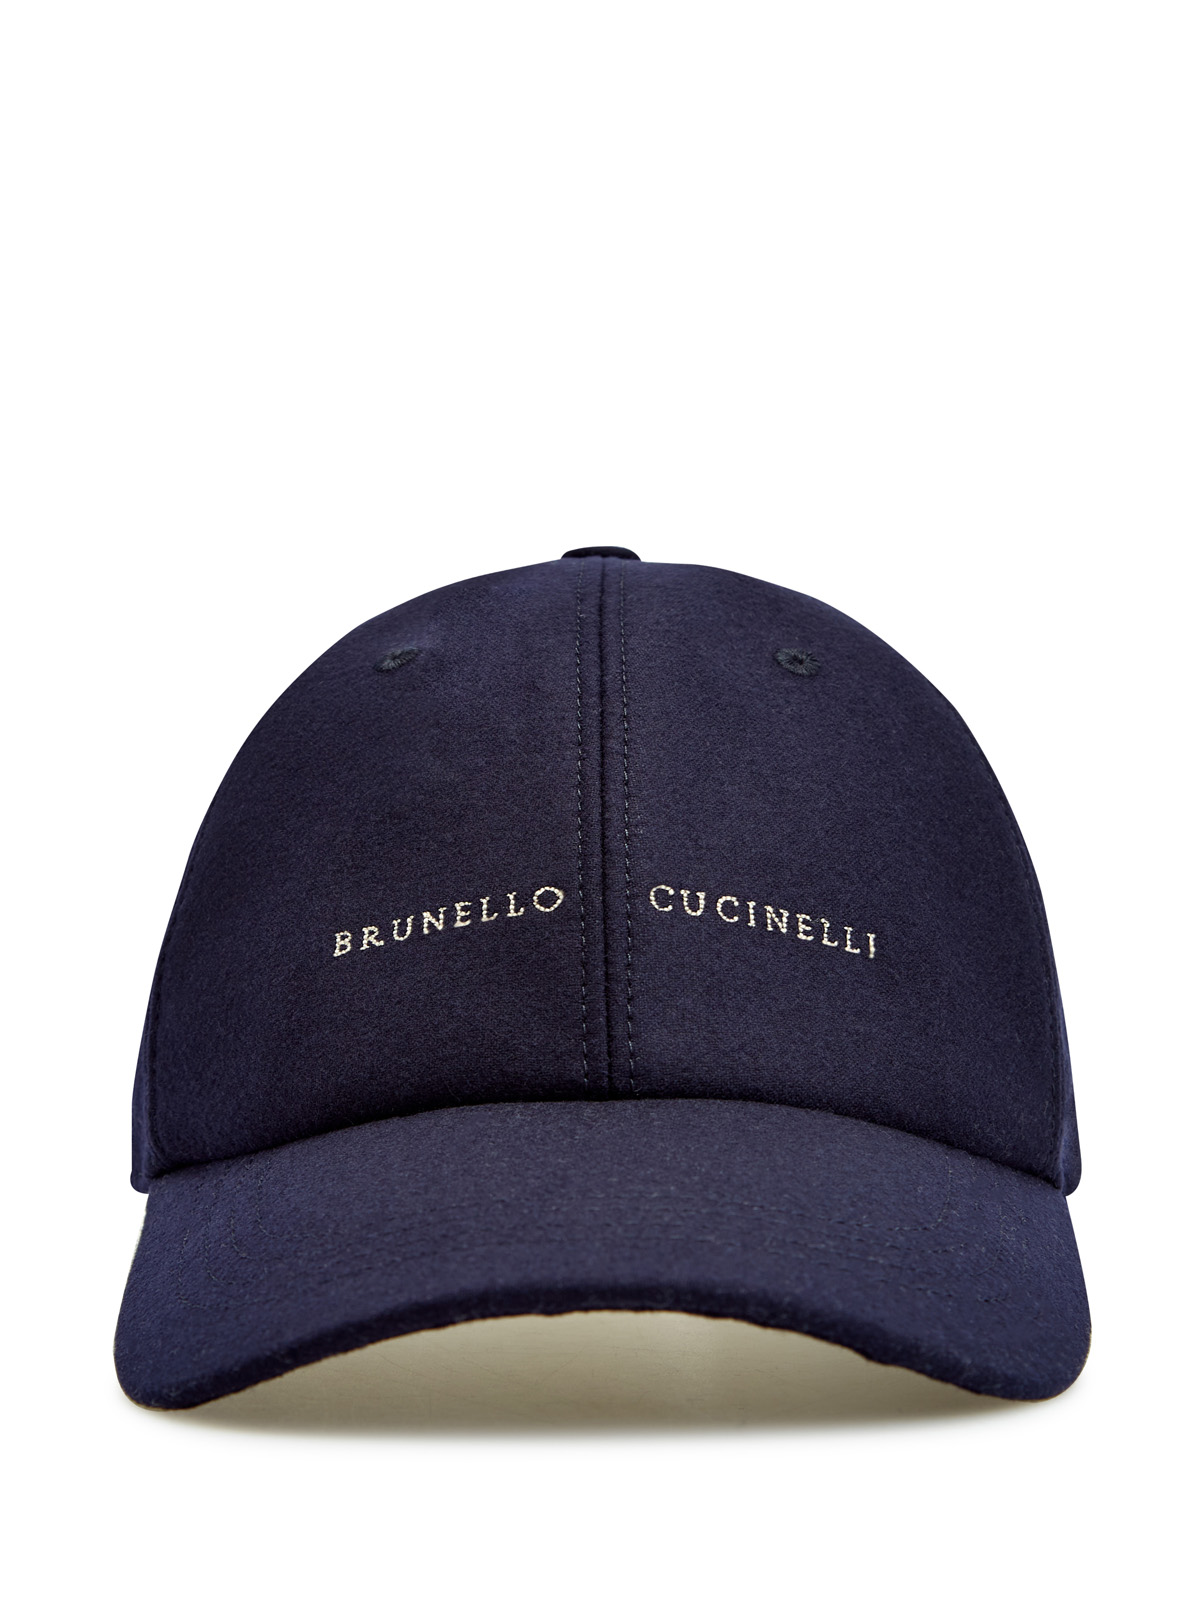 Бейсболка в стиле sprezzatura из кашемира и шелка с вышивкой BRUNELLO CUCINELLI, цвет синий, размер M;L;XL